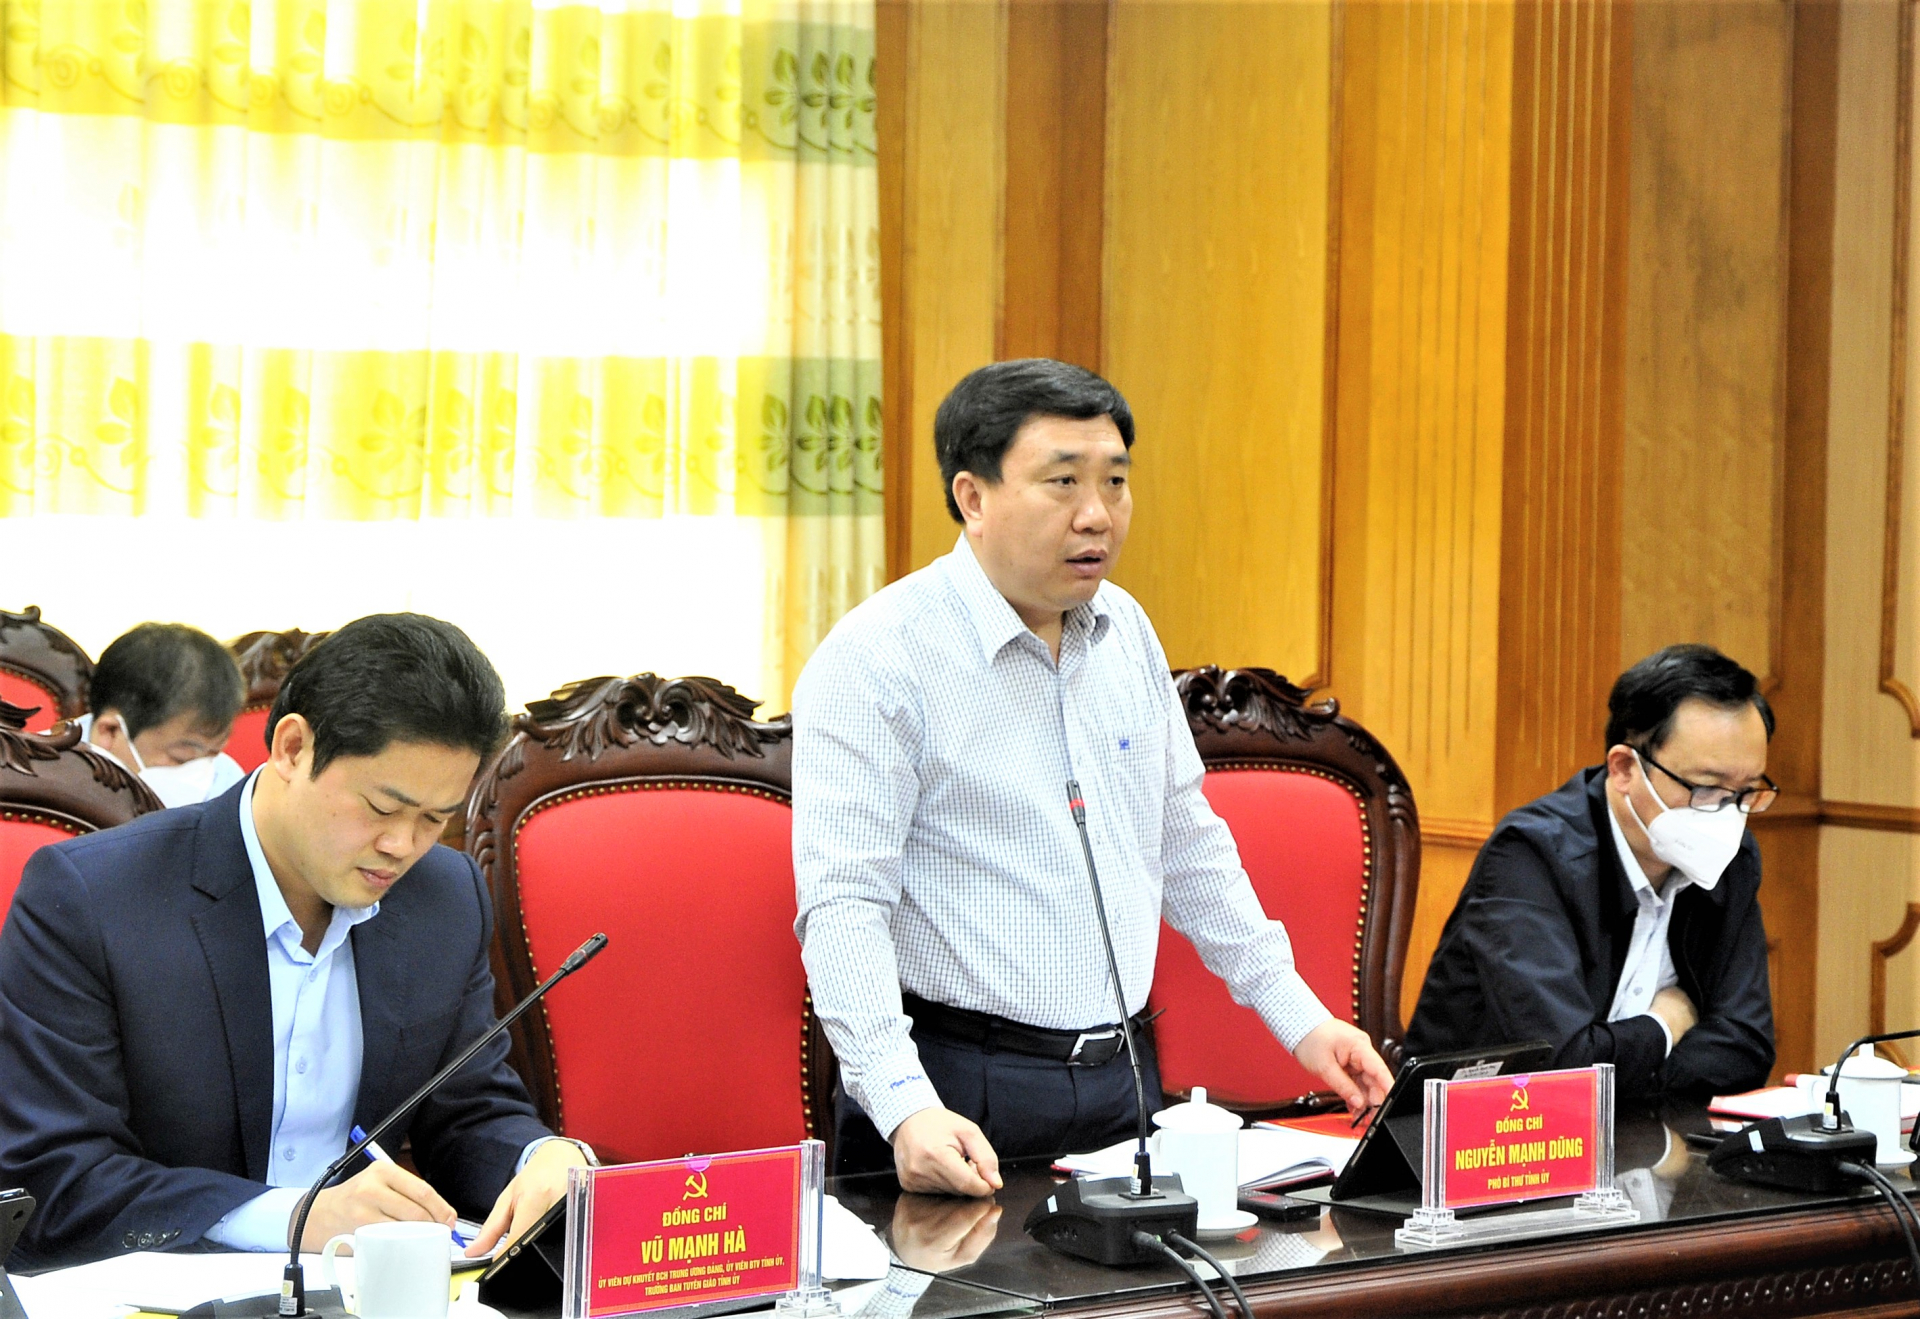 Phó Bí thư Tỉnh ủy Nguyễn Mạnh Dũng đề nghị cần có sự kiên trì, quyết tâm, quyết liệt trong việc đưa các nghị quyết đi vào cuộc sống.